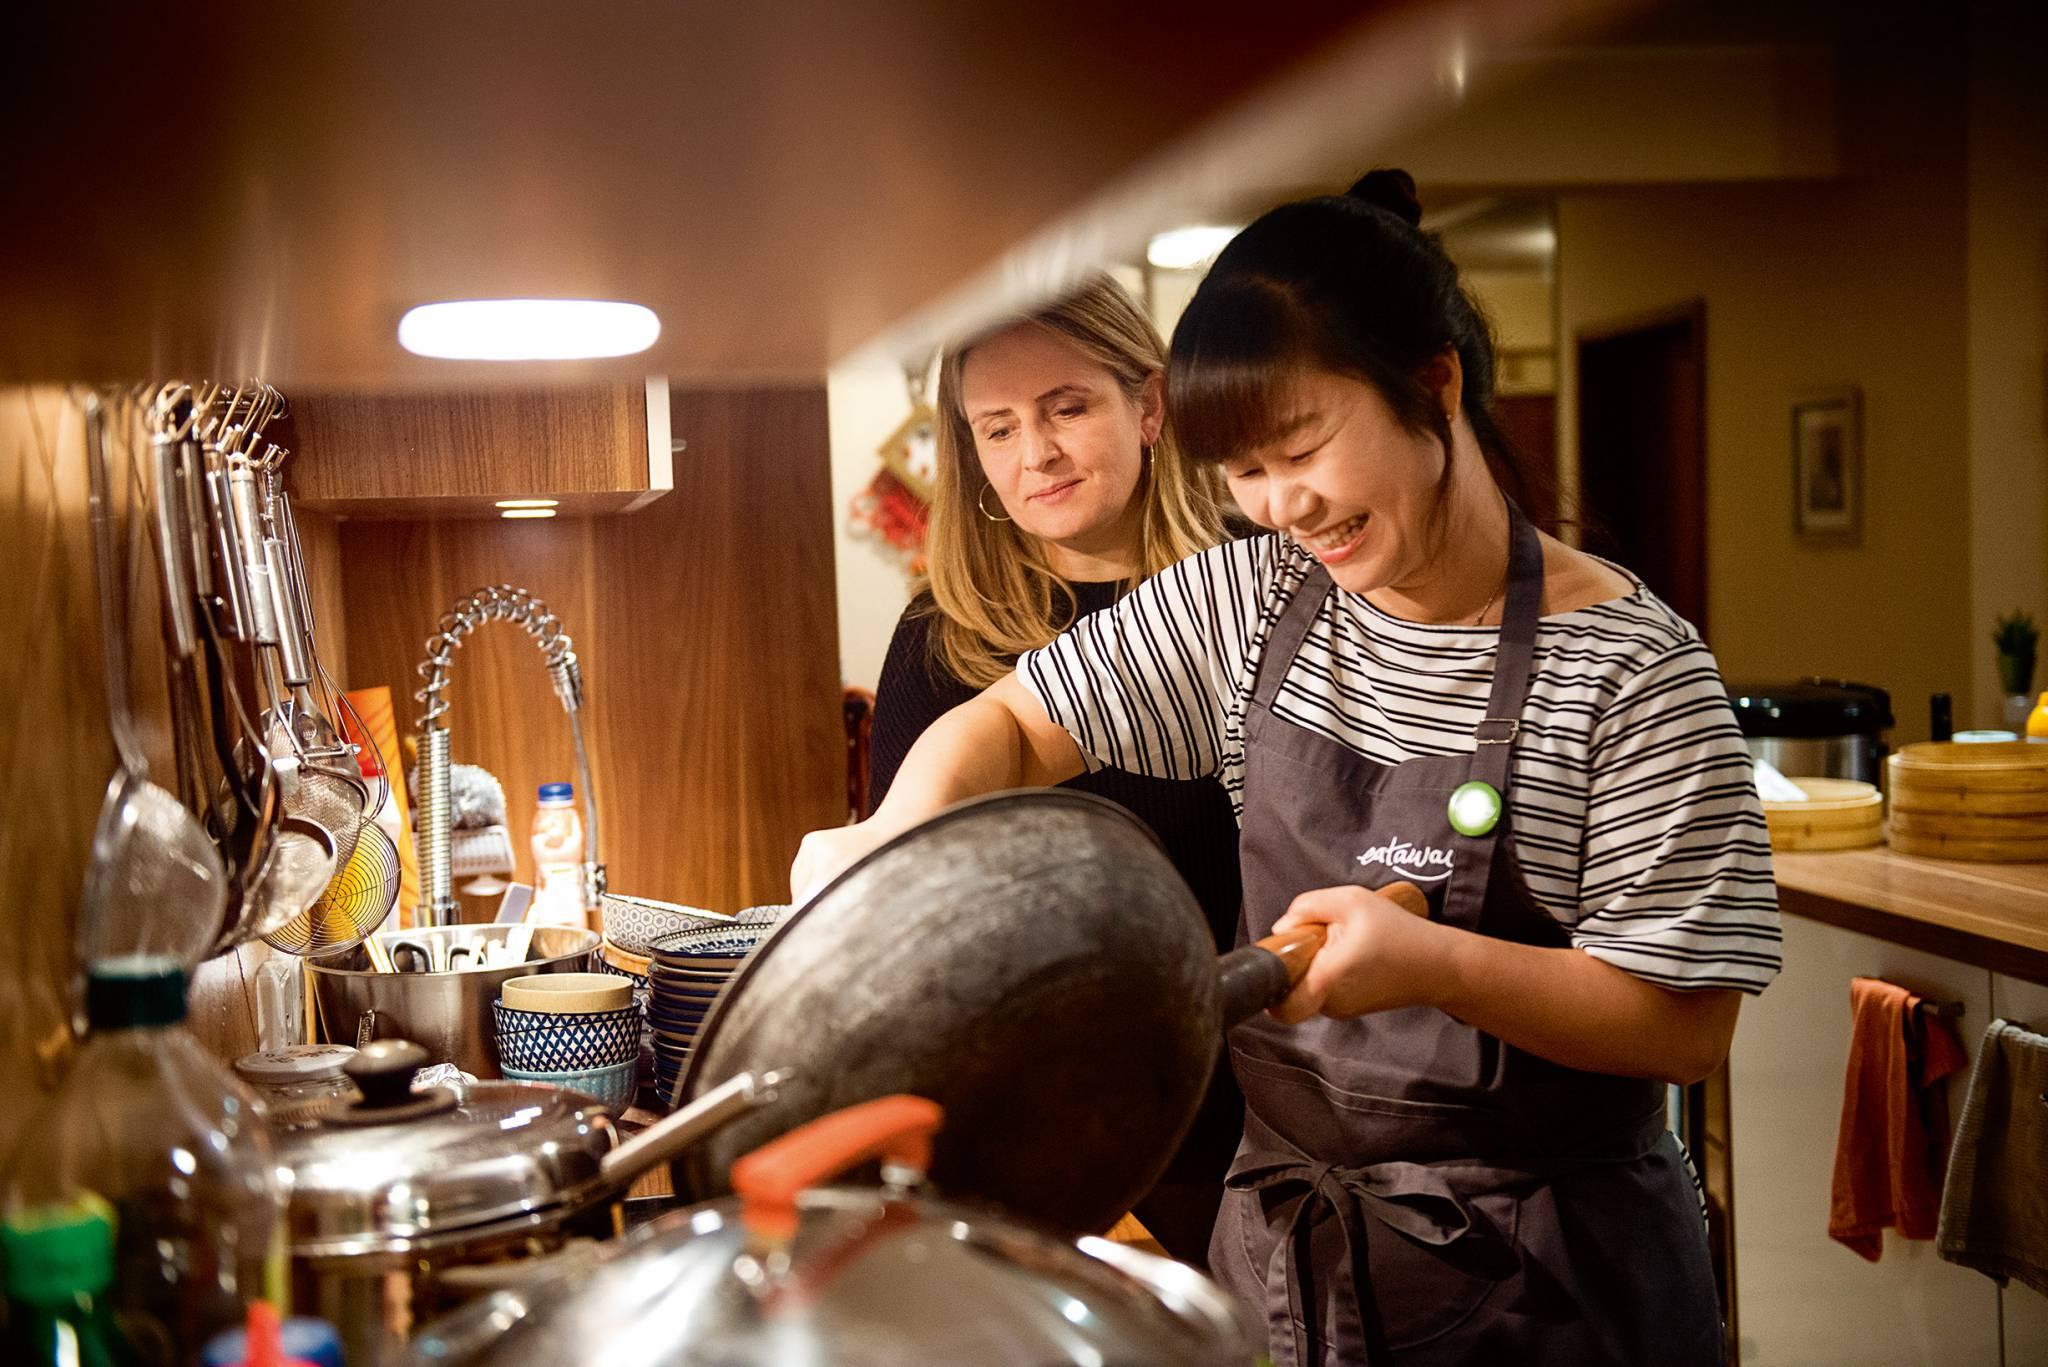  Przygotowywanie kolacji koreanskiej – Marta Bradshaw, obok królowa kuchni koreańskiej Mira. (Fot. Bartosz Siedlik)